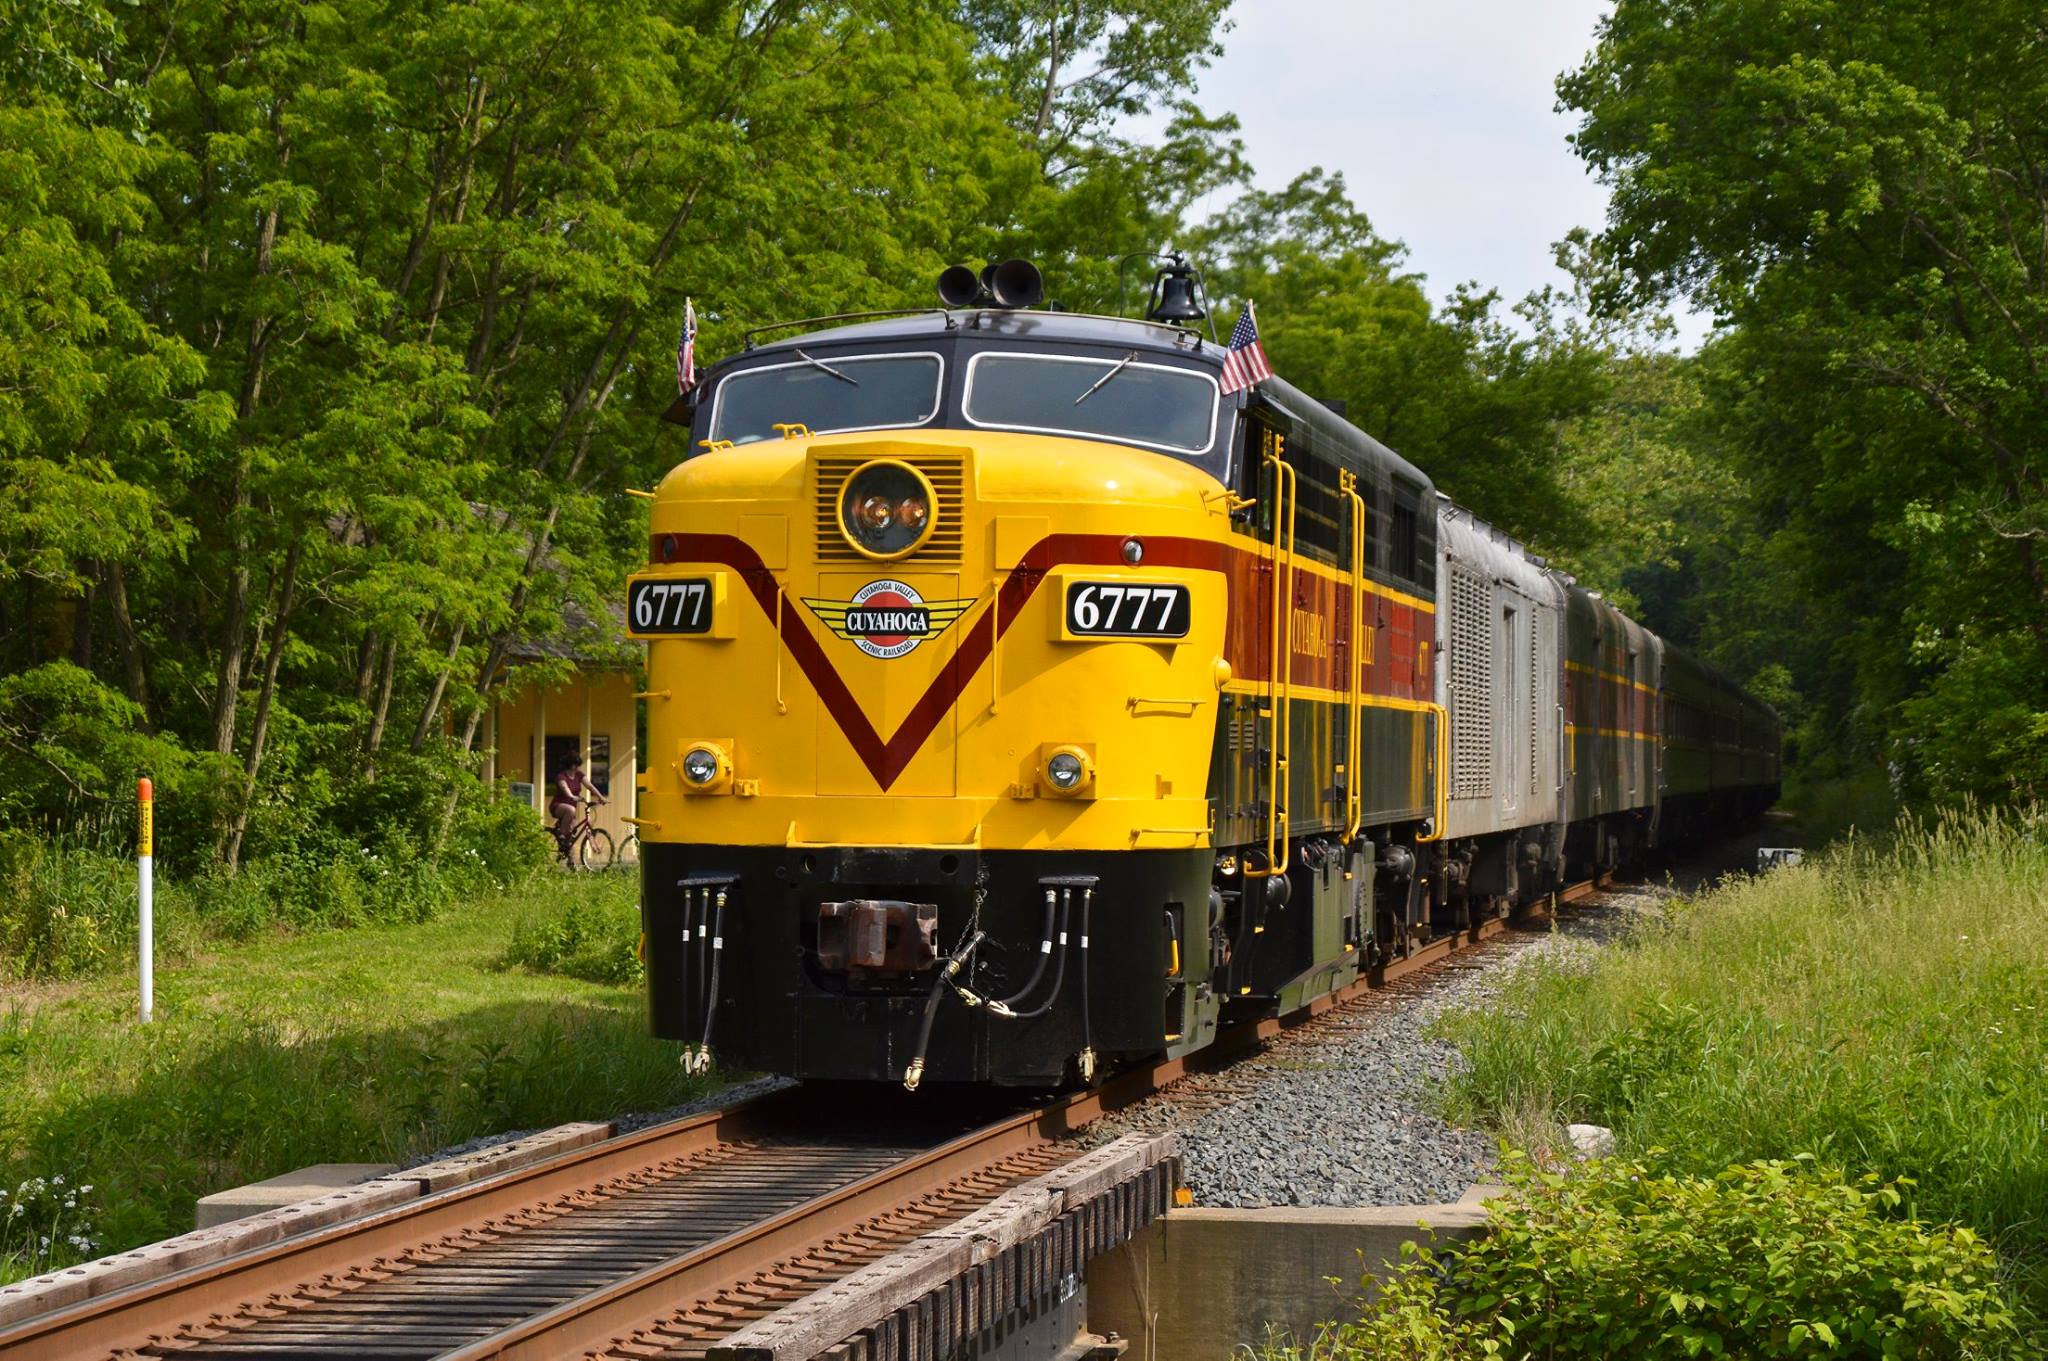 scenic railroad trips pennsylvania